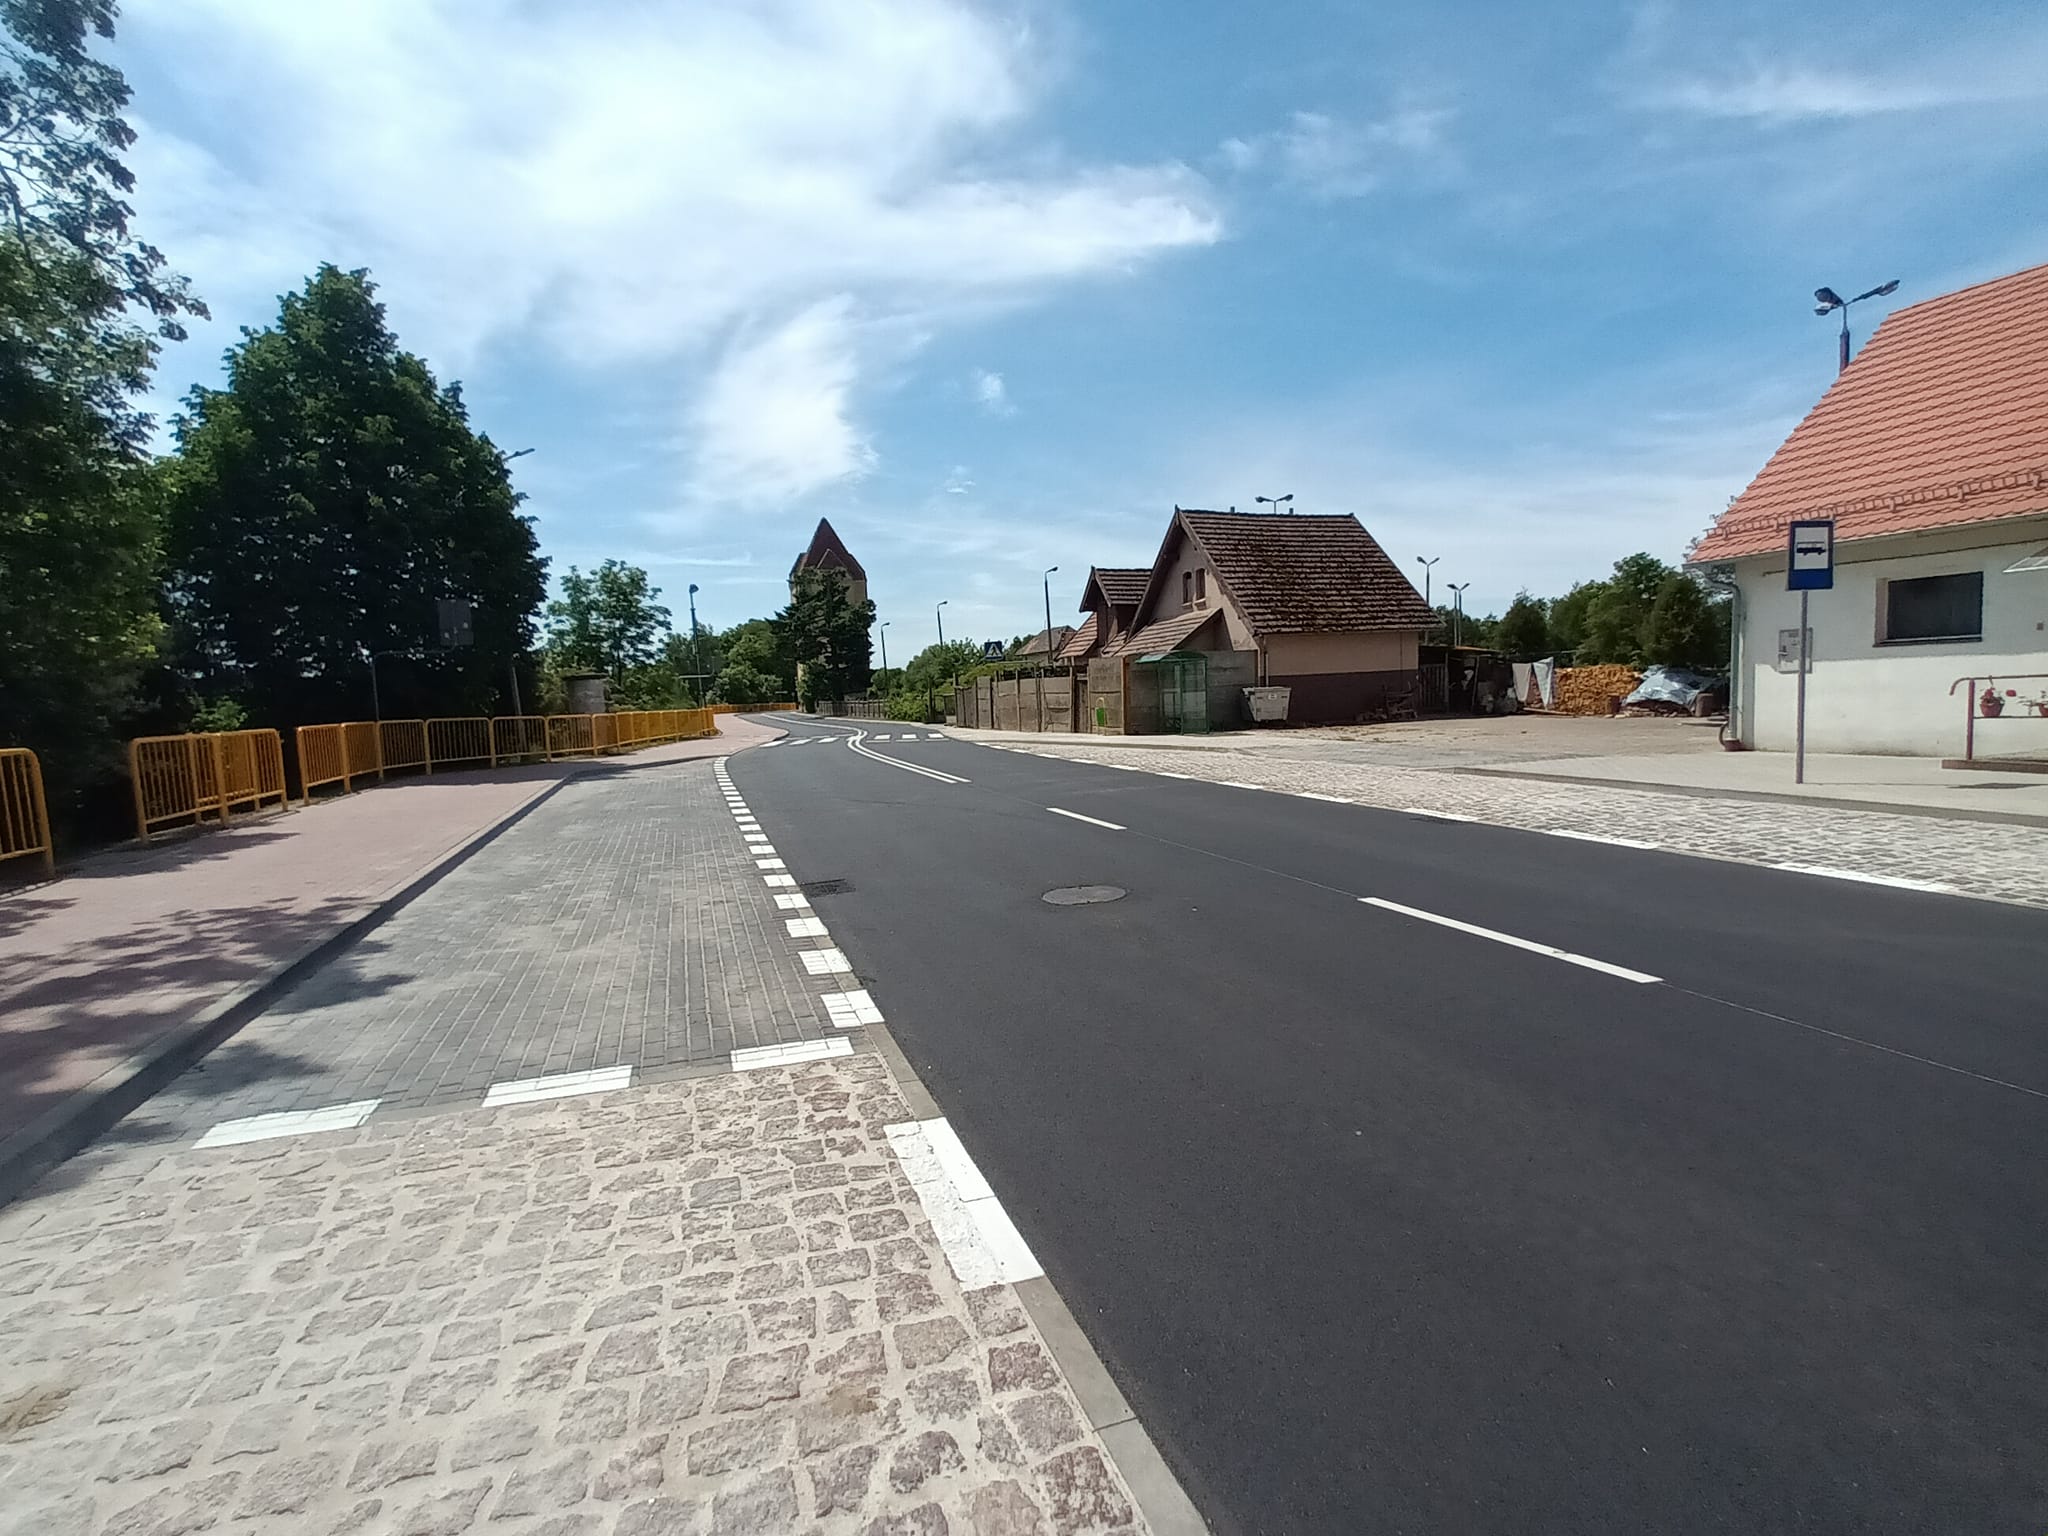 Ulica Dworcowa w Więcborku od dziś otwarta dla ruchu kołowego i pieszego - Photo Tomasz Roman Bracka